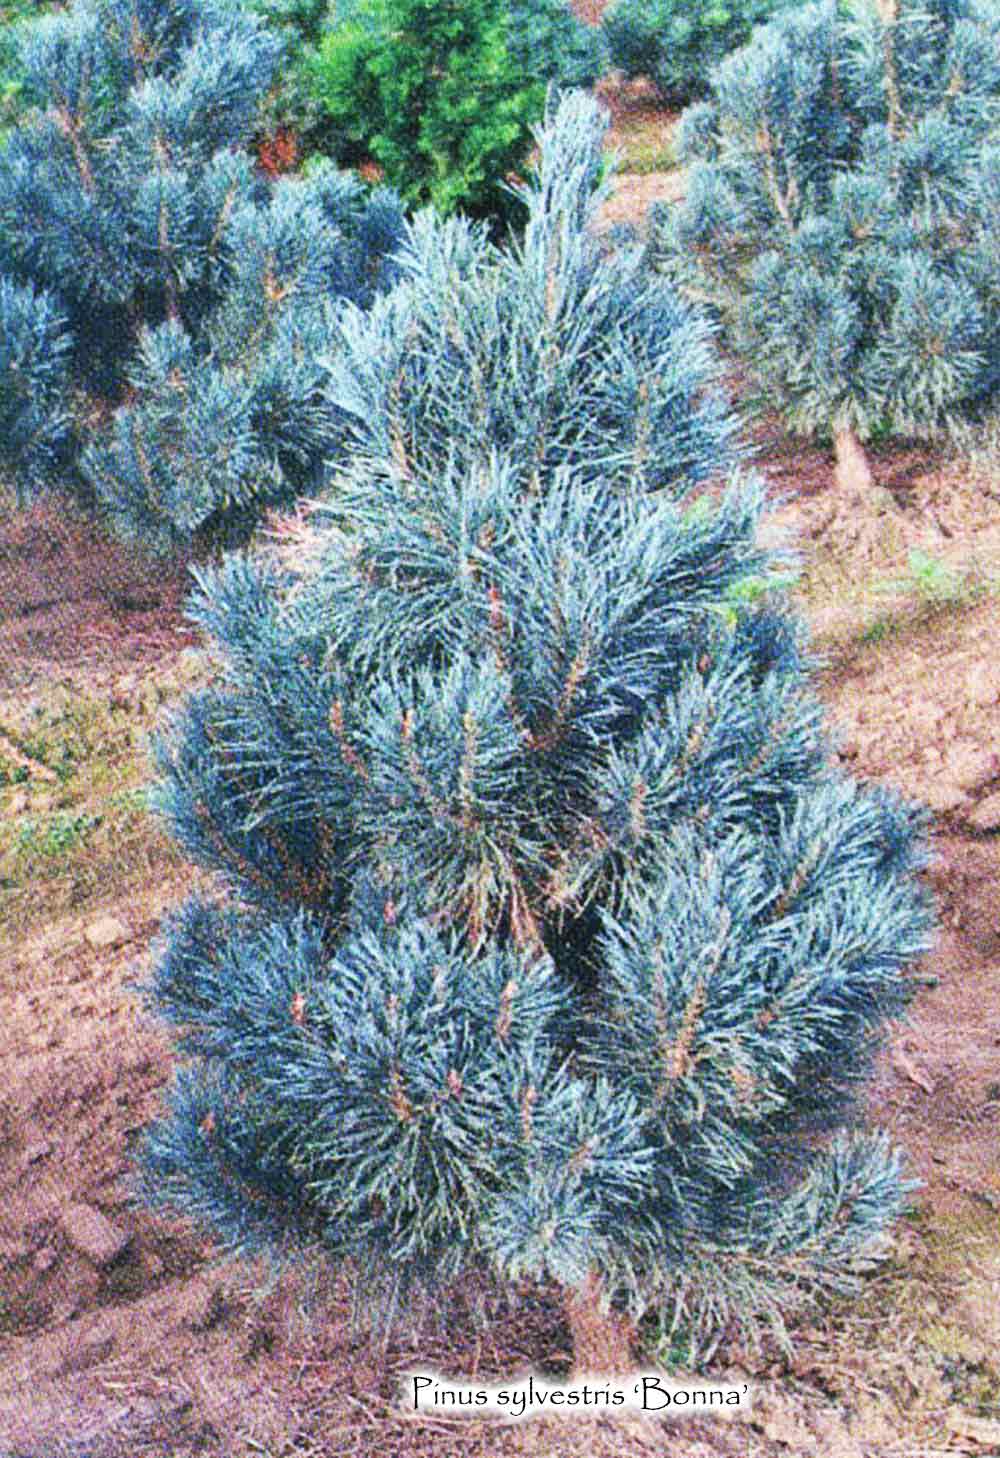 Pinus sylvestris 'Bonna'  -  Blue Scots Pine